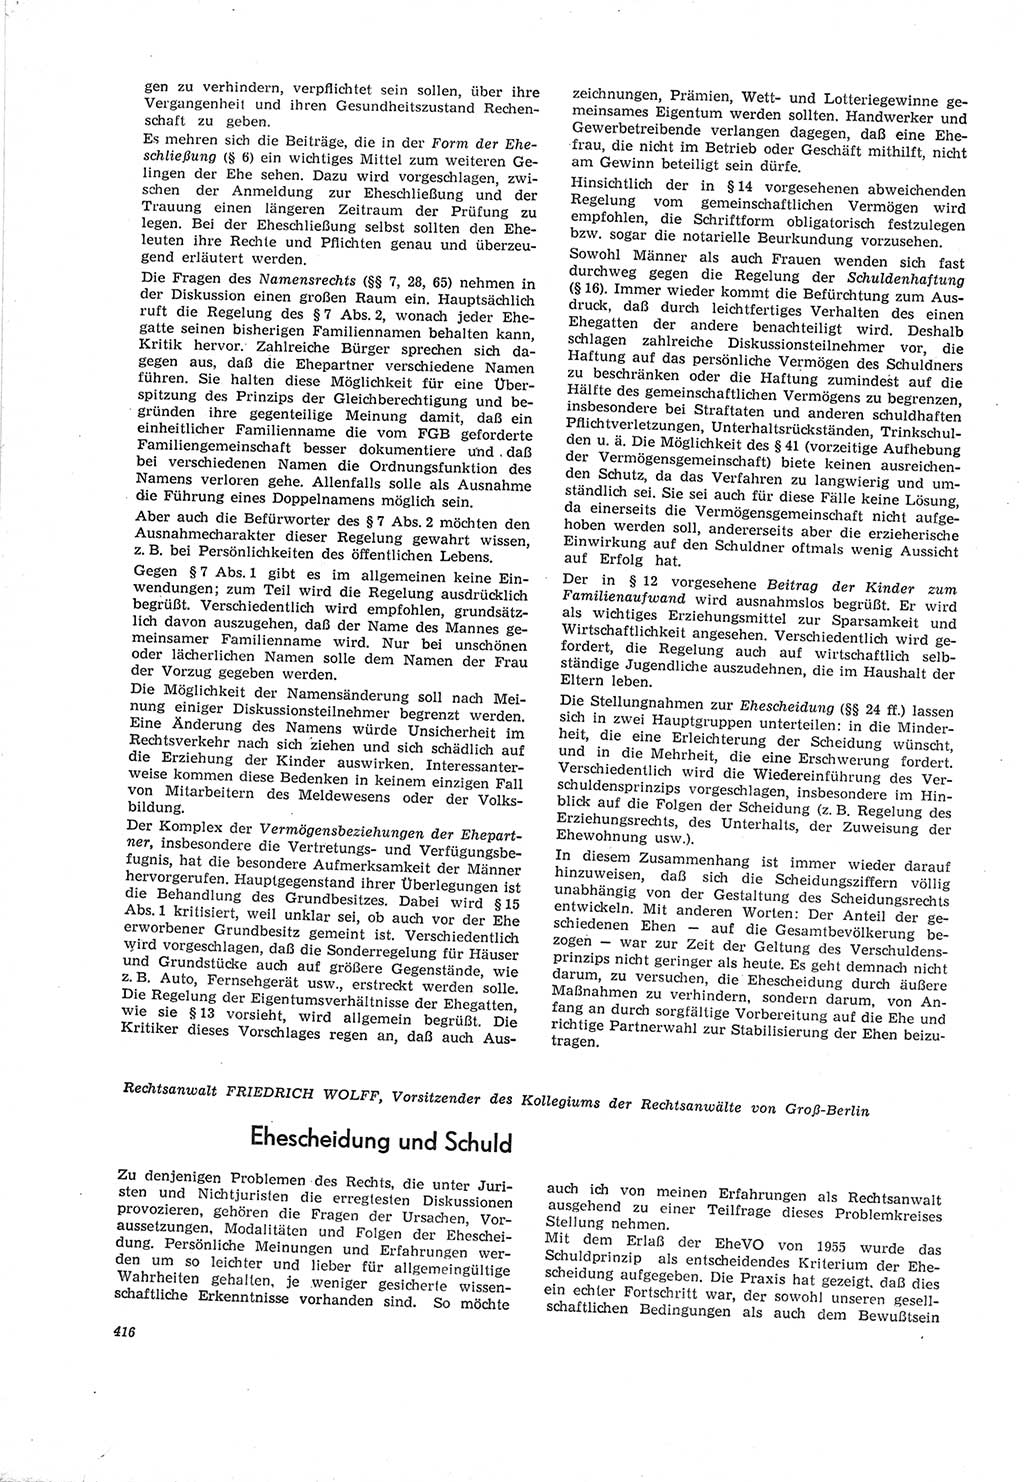 Neue Justiz (NJ), Zeitschrift für Recht und Rechtswissenschaft [Deutsche Demokratische Republik (DDR)], 19. Jahrgang 1965, Seite 416 (NJ DDR 1965, S. 416)